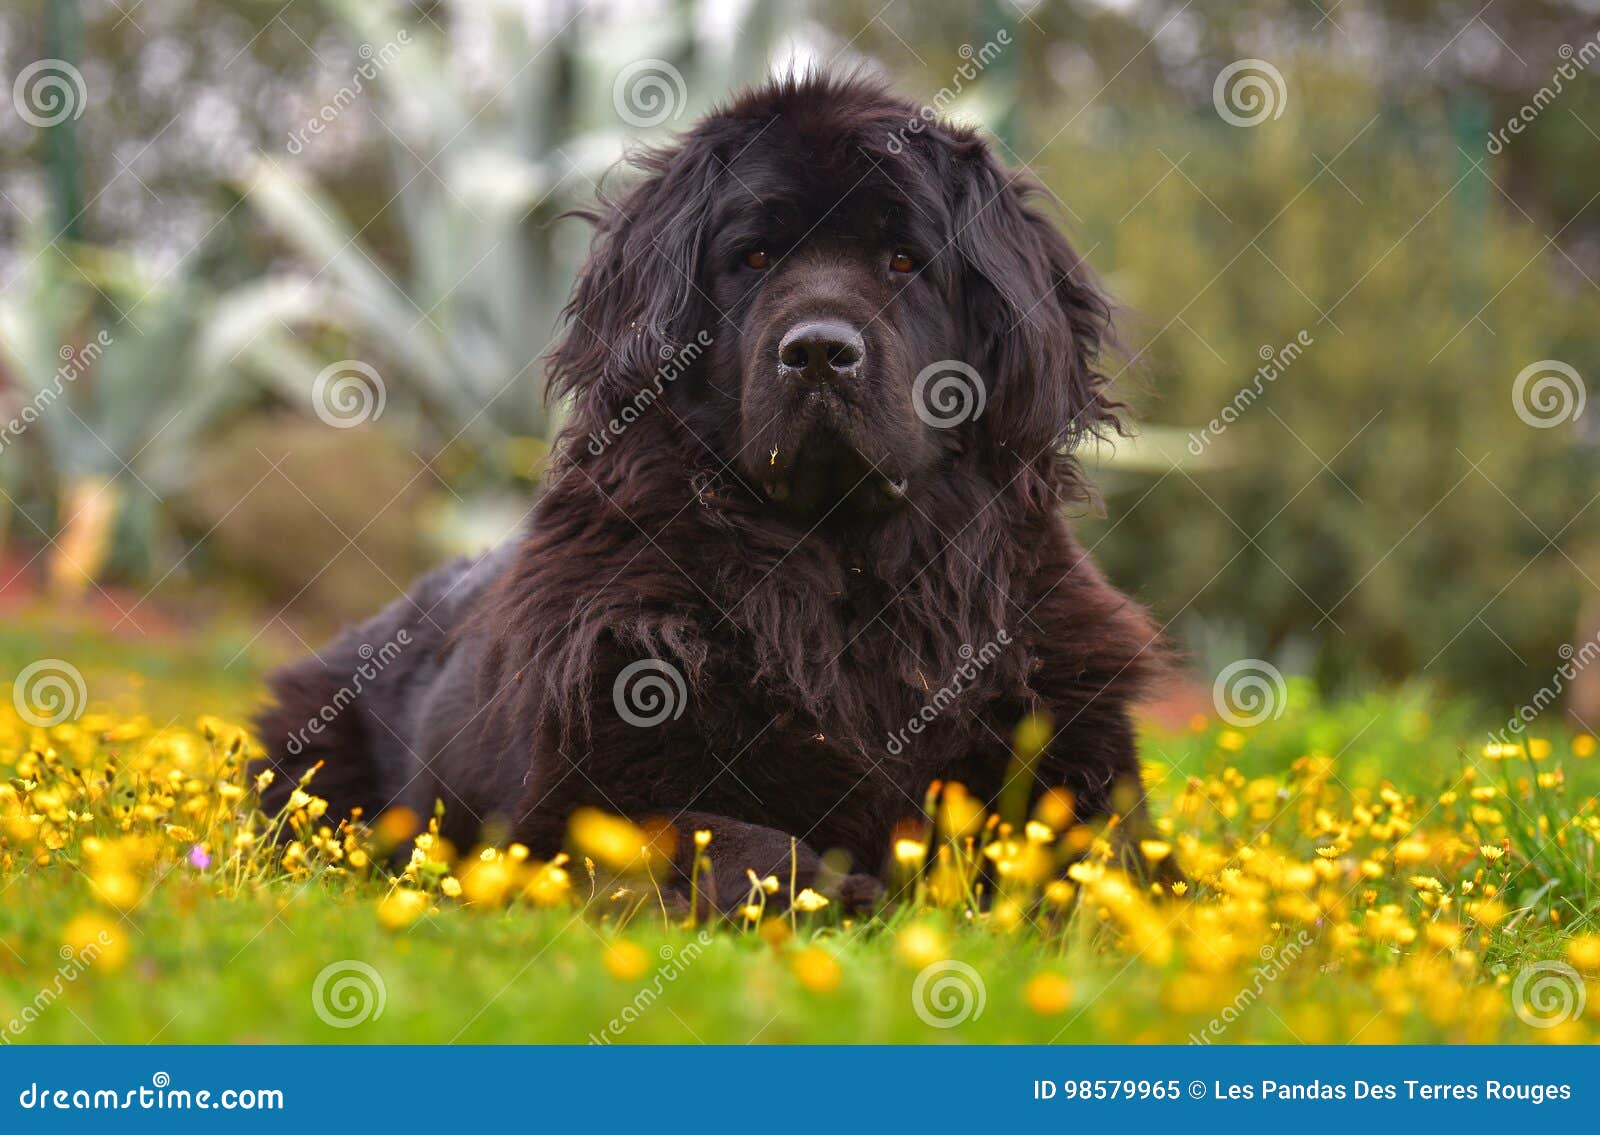 Newfoundland Dog Stock Image Image Of Background Cute 98579965